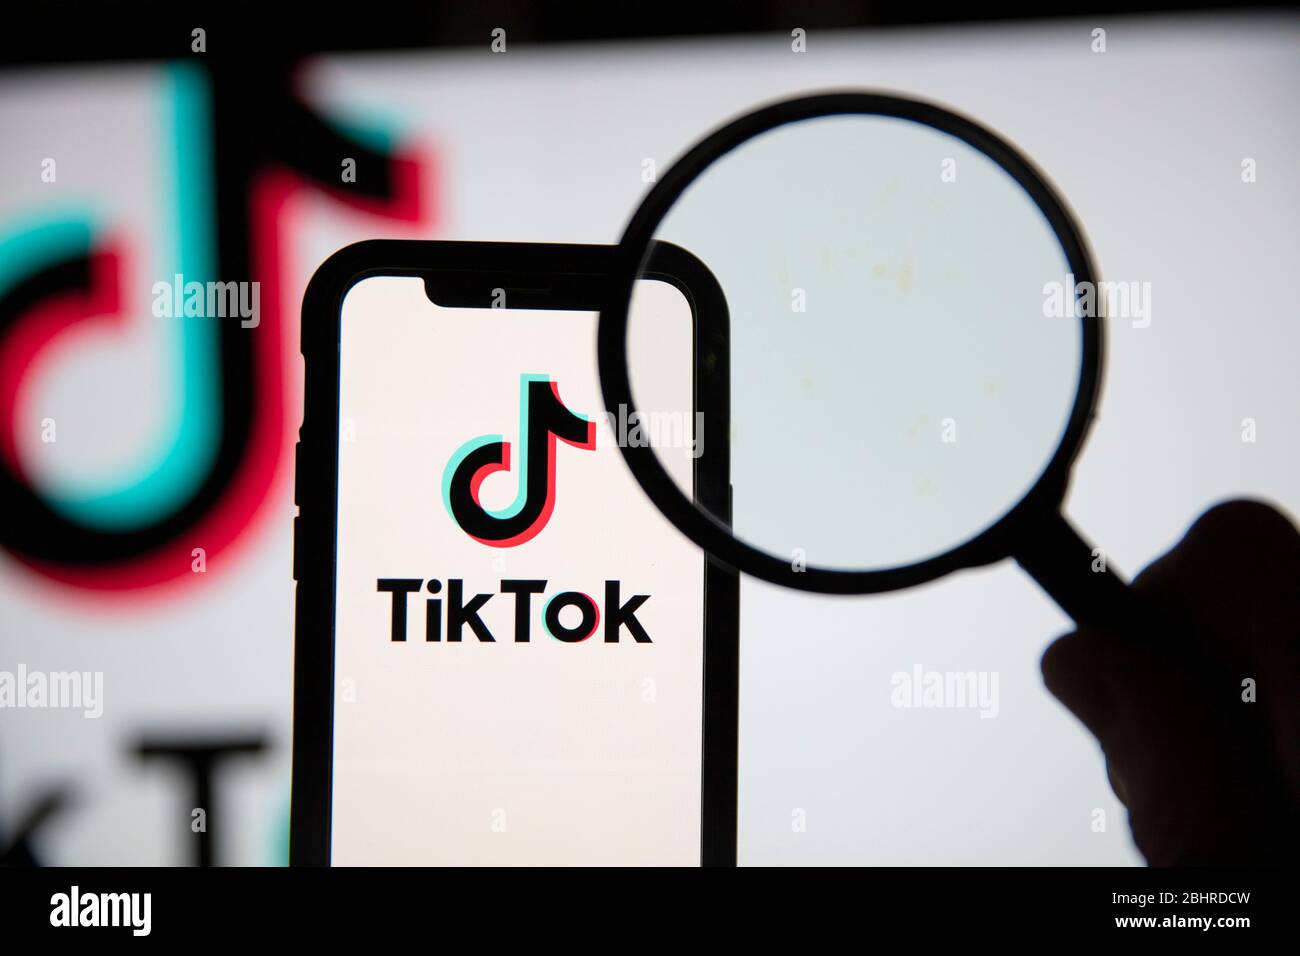 LONDRA, Regno Unito - Aprile 27 2020: Icona dell'app di social media Tik Tok al microscopio Foto Stock